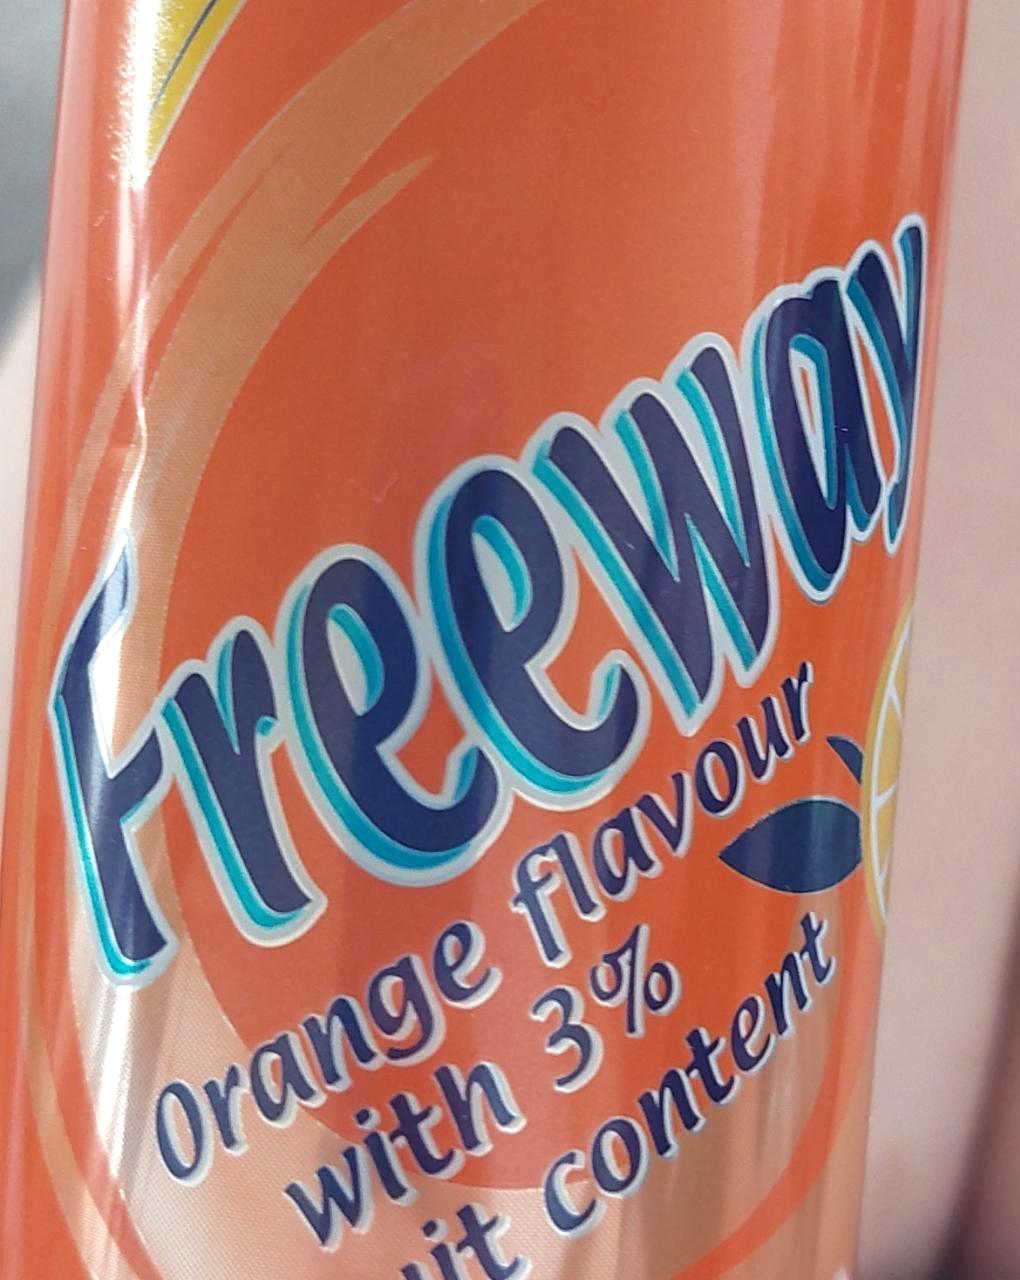 Képek - Freeway orange flavour with 3% fruit content